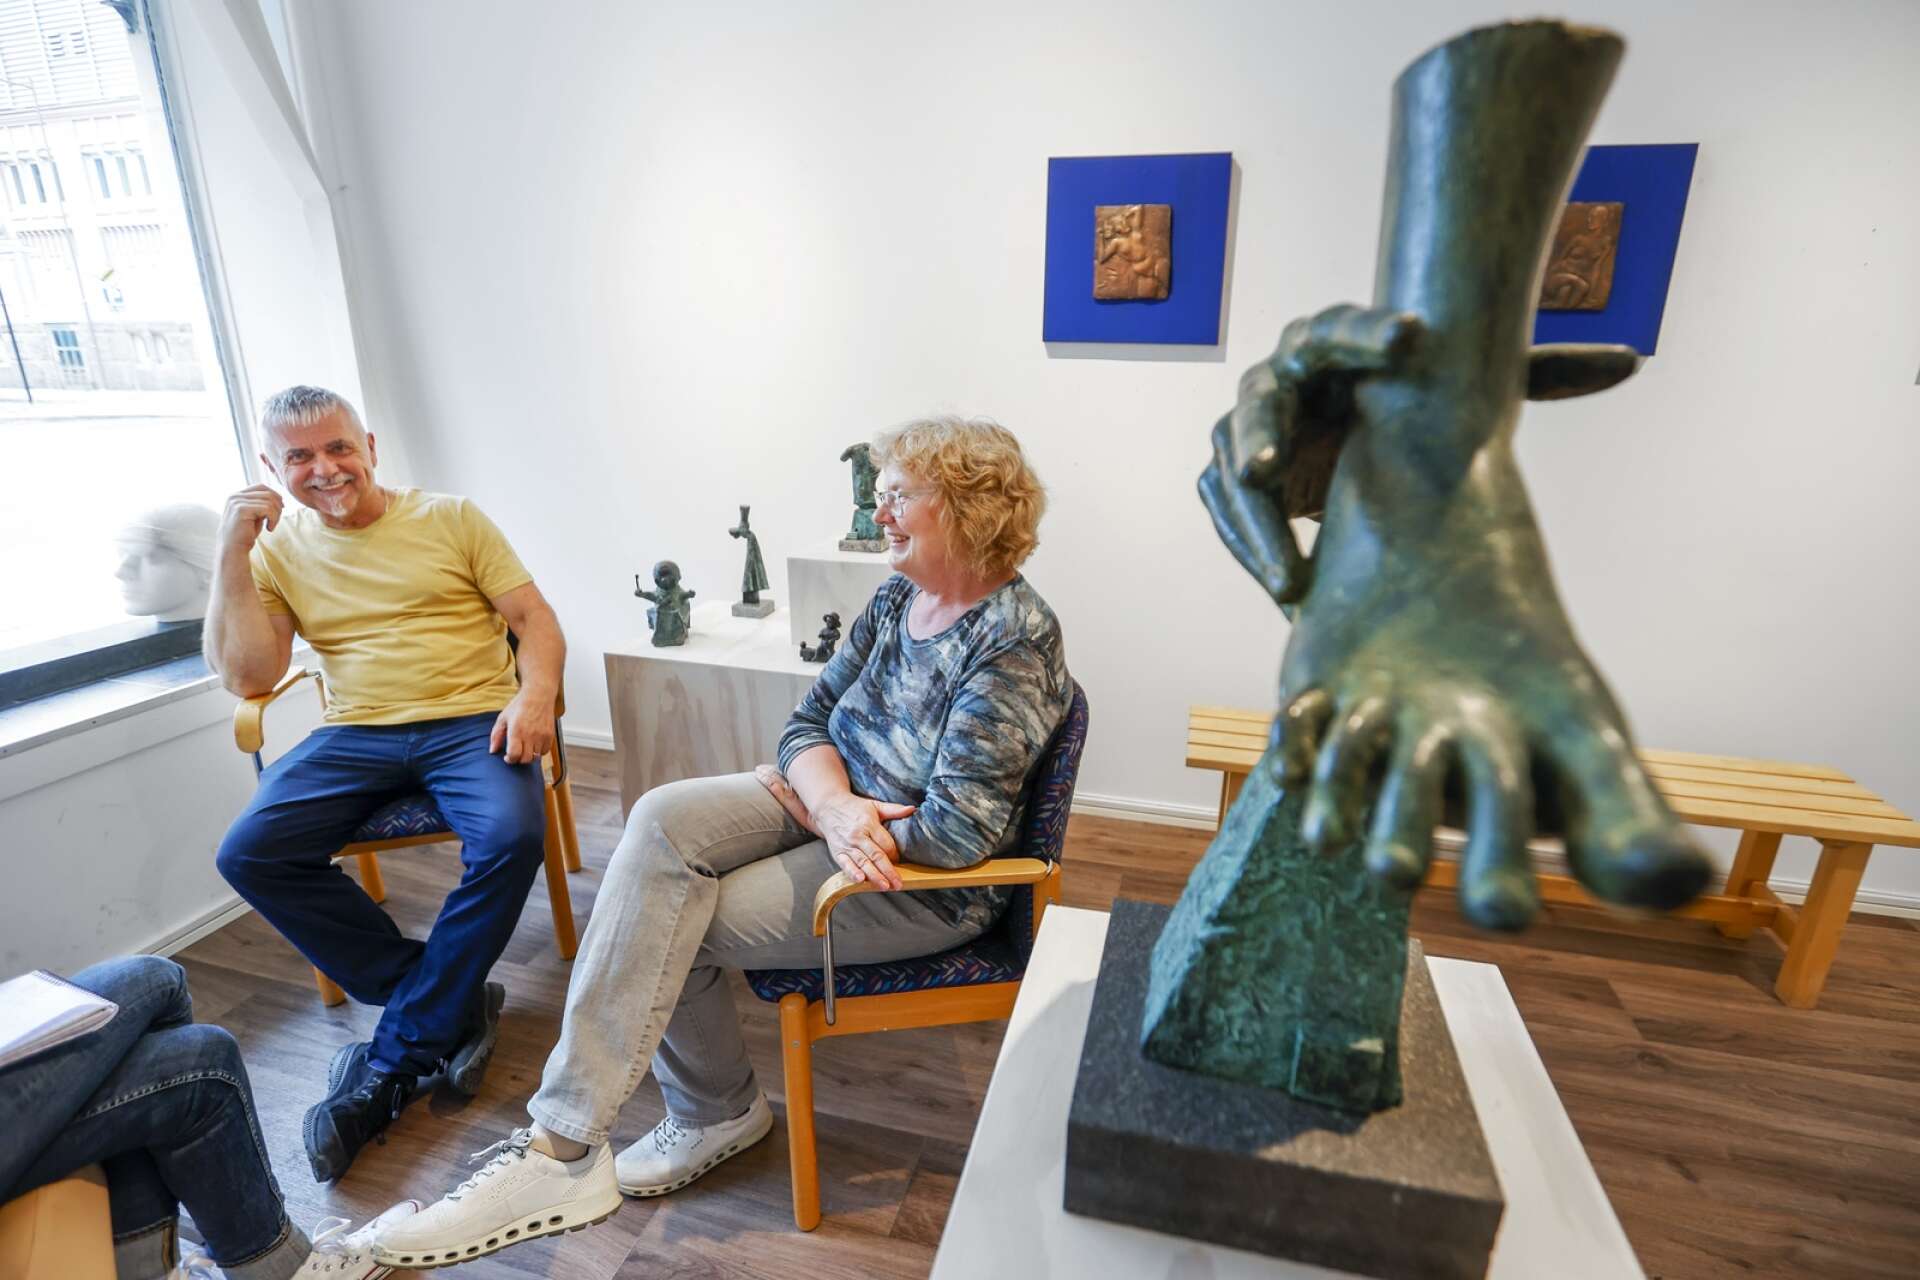 Ann Carlsson Korneev och Viktor Korneev ställer ut på Galleri Konst i Karlstad. De har levt och verkat tillsammans i 25 år och har redan innan utställningen satt spår i Karlstad.